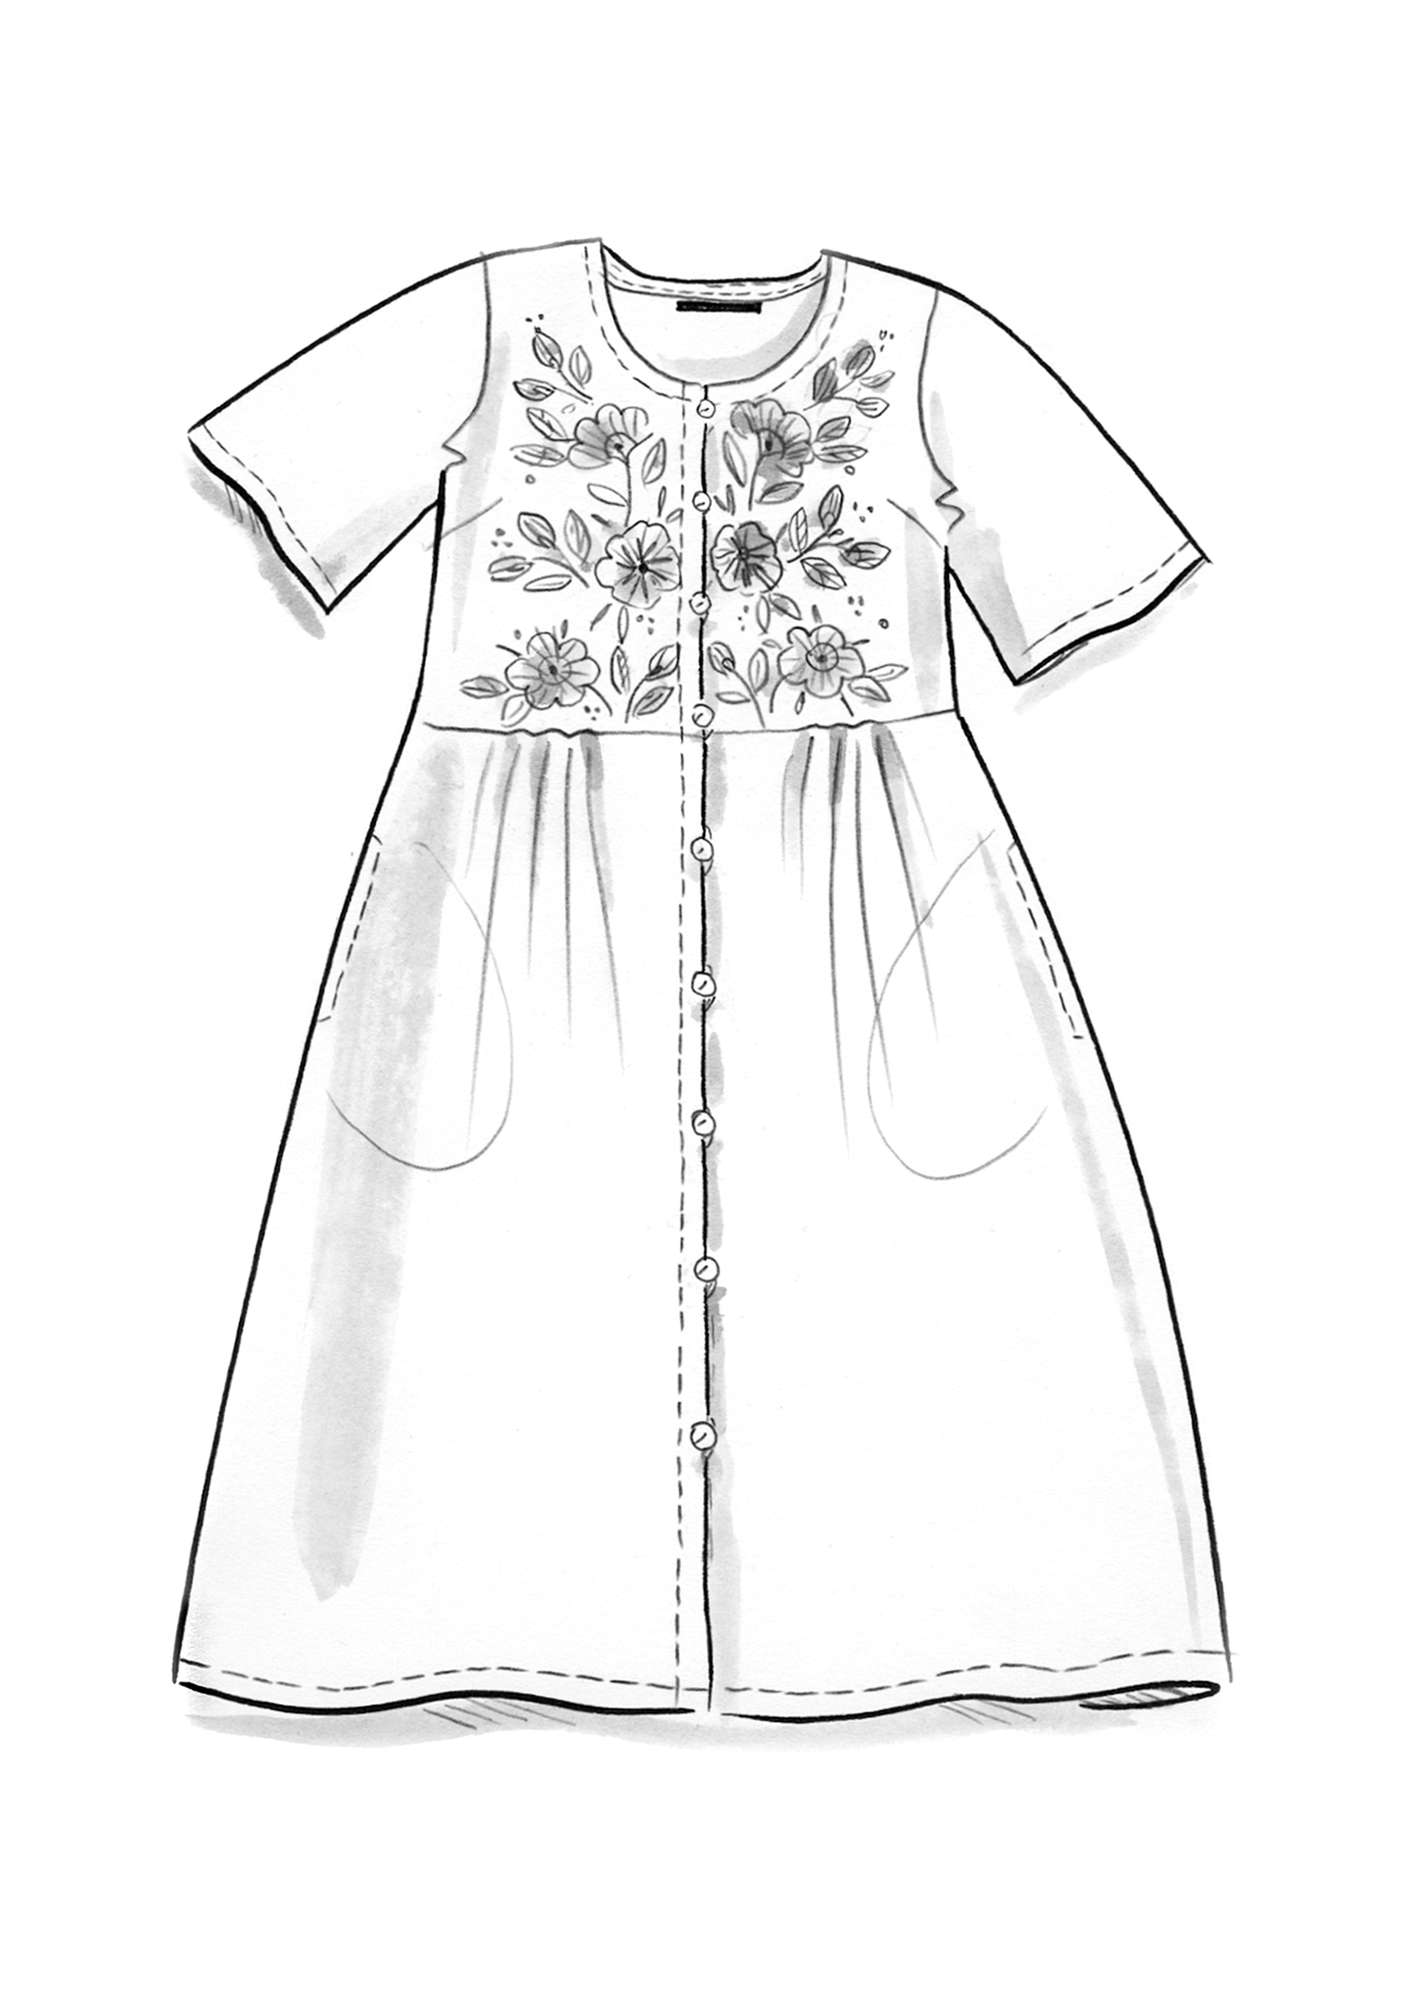 Geweven jurk  Margrethe  van biologisch katoen/zijde klein blauw